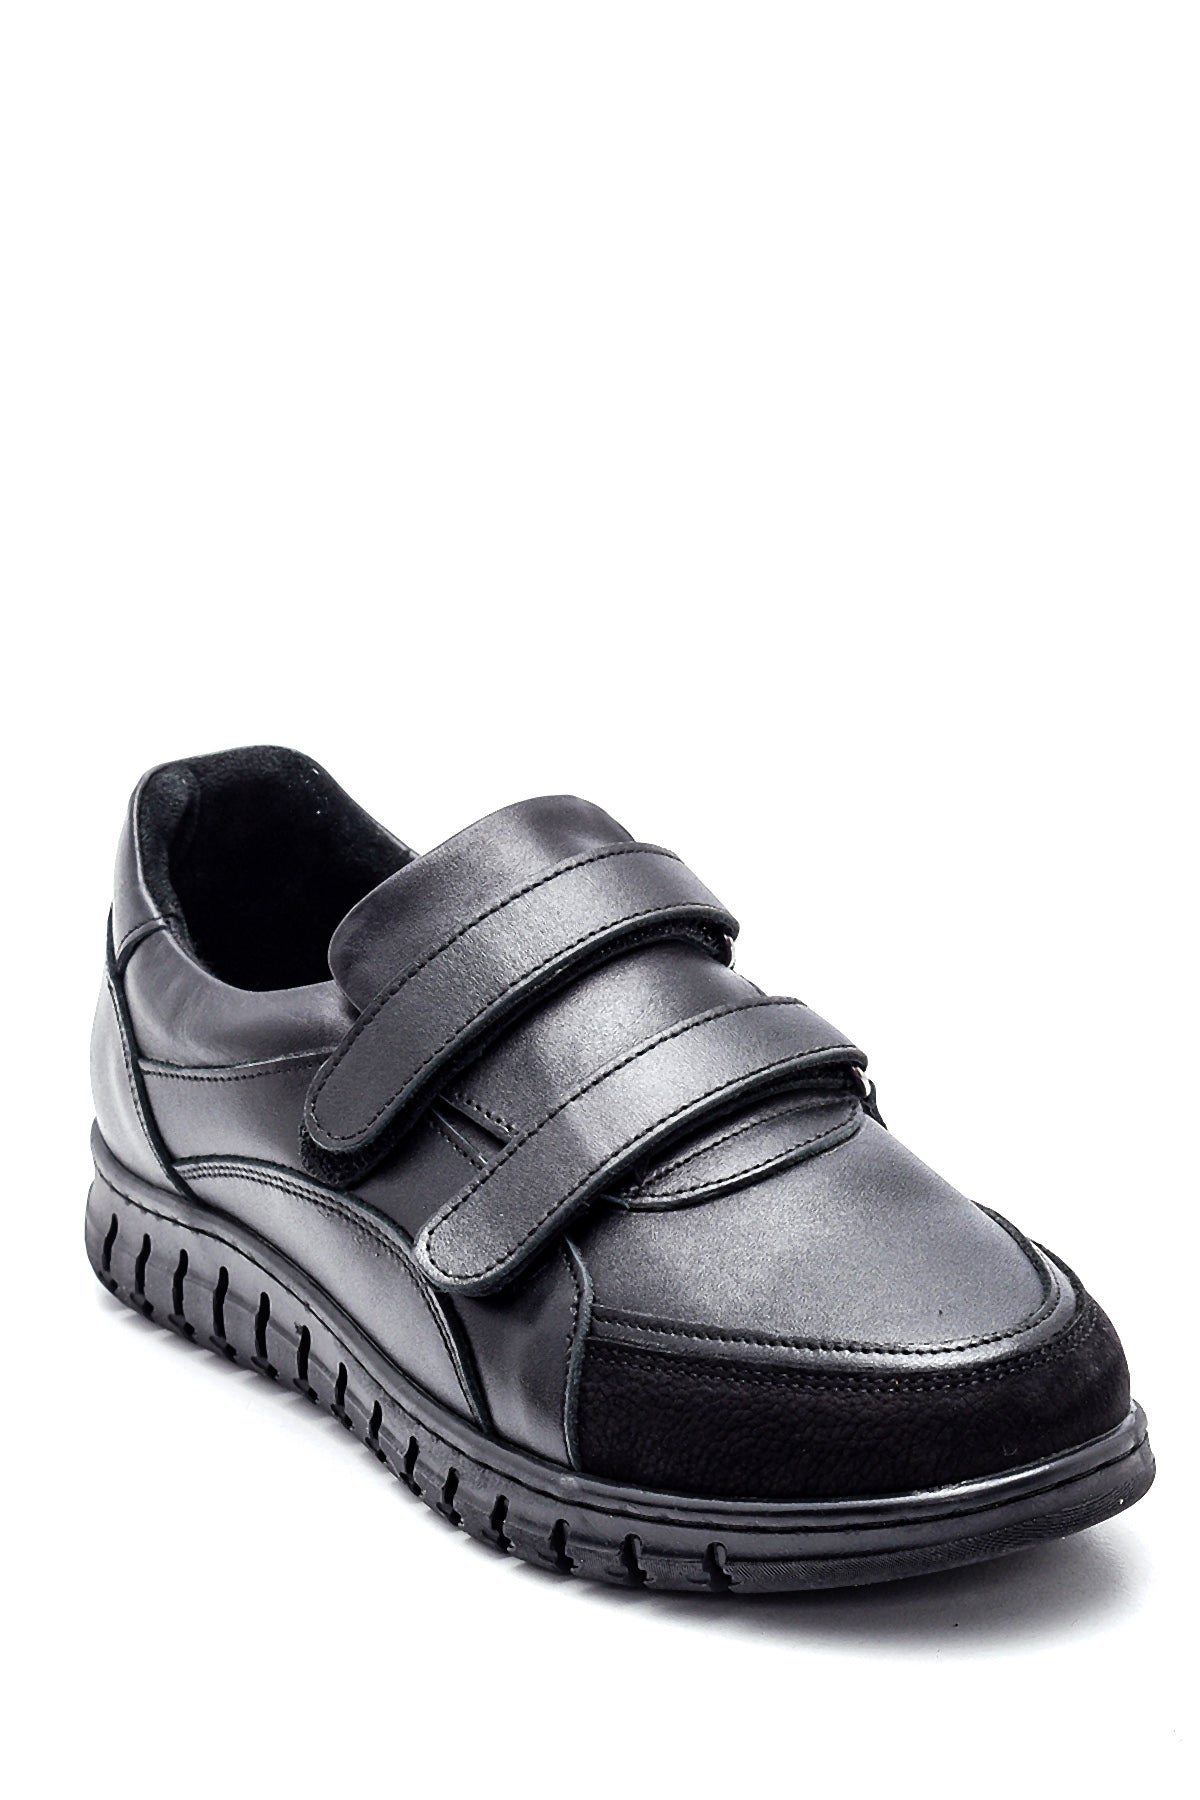 Kadın Siyah Deri Comfort Casual Ayakkabı